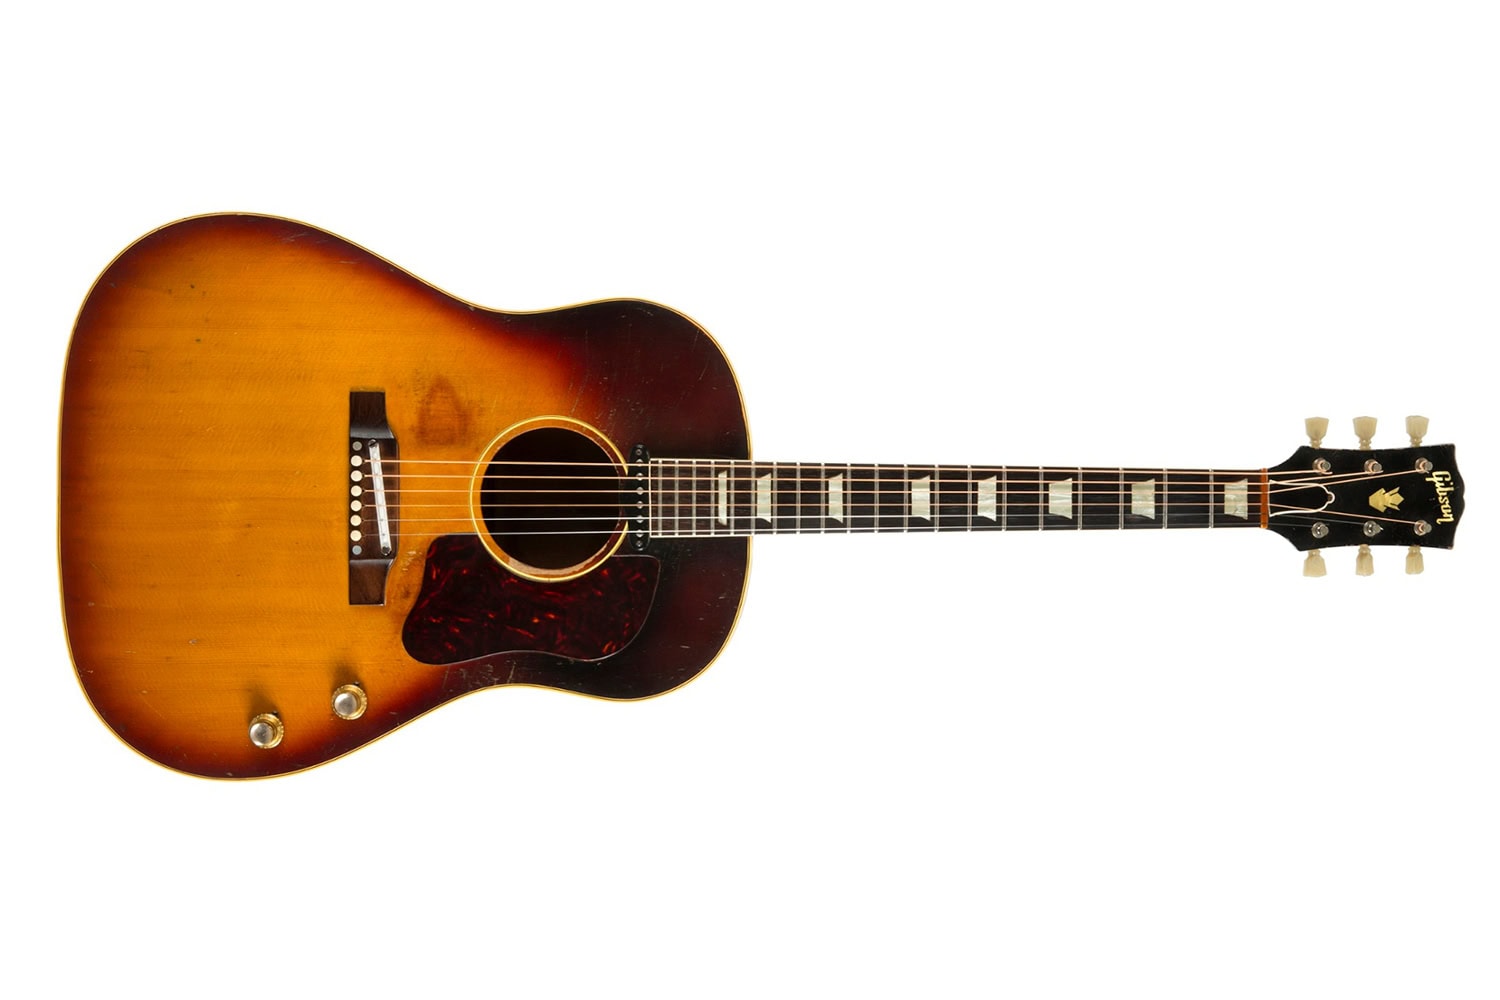 John Lennon guitar sells for $2,2 million